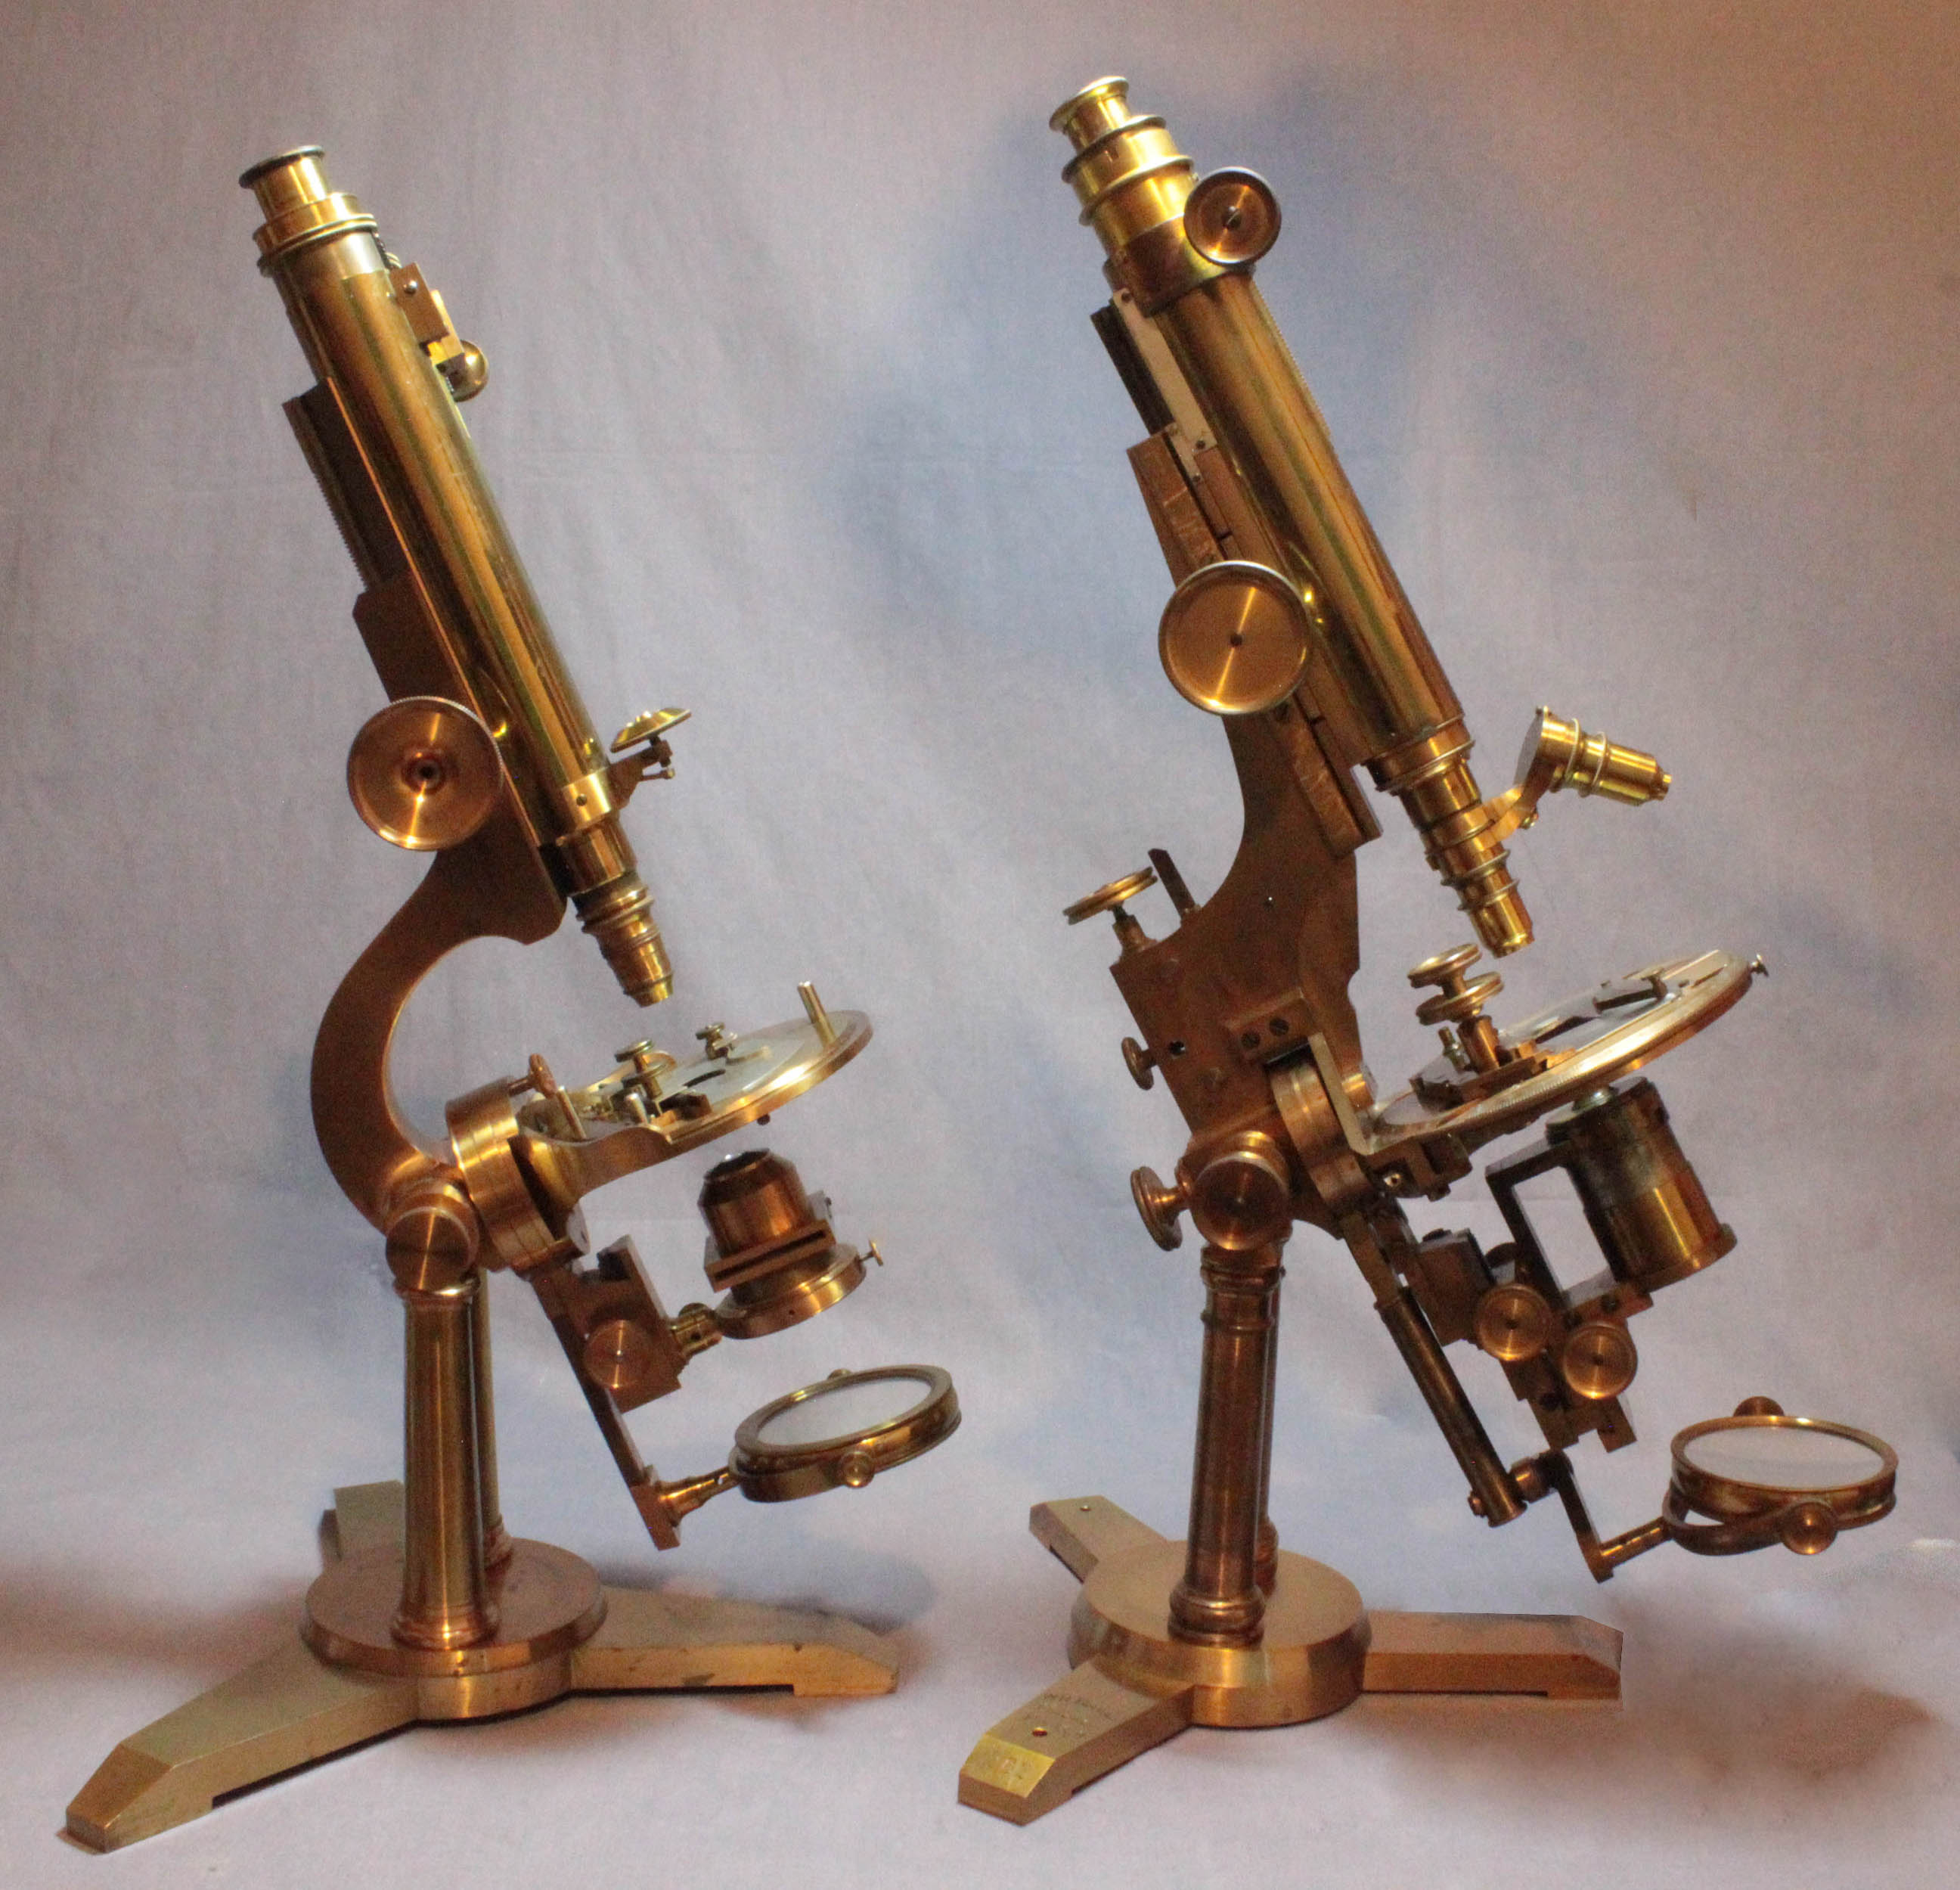 comparison bow and bulloch  microscopes